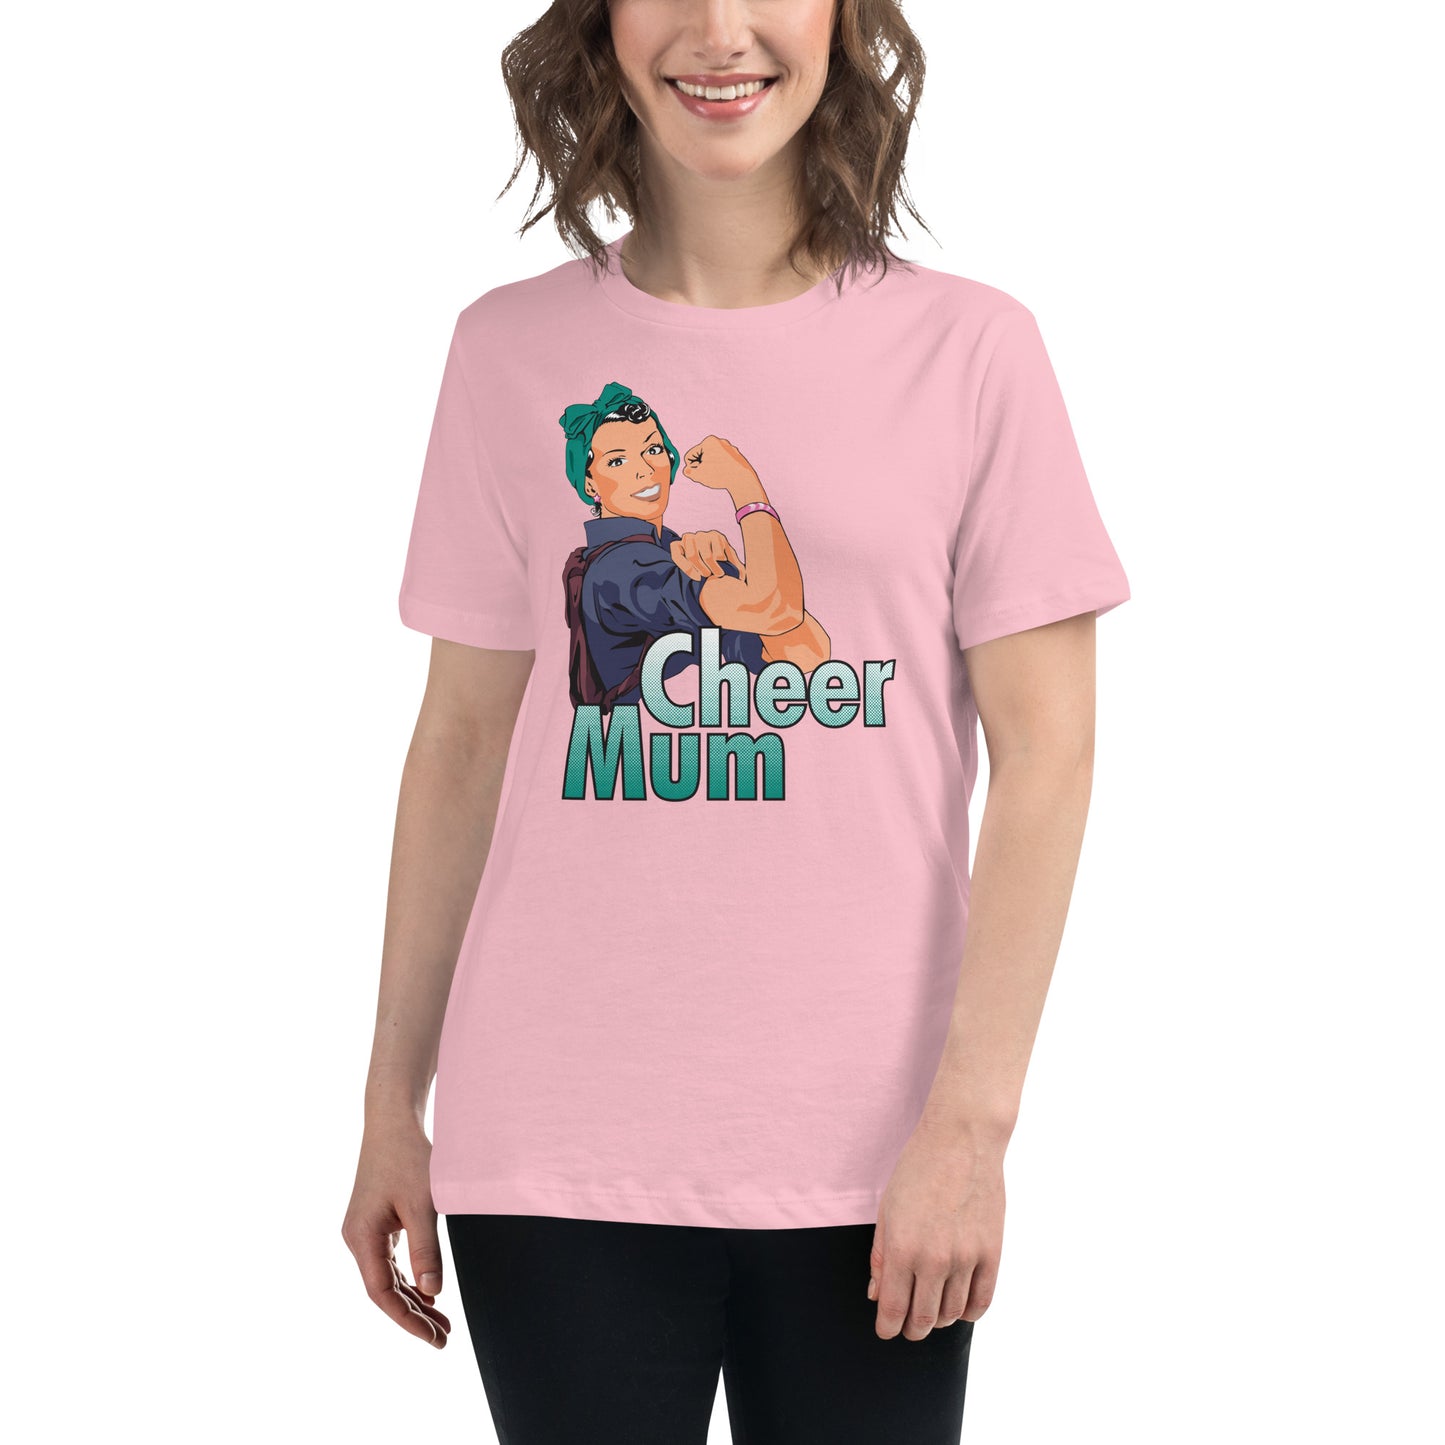 Cheer Mum T-Shirt (Style 5)